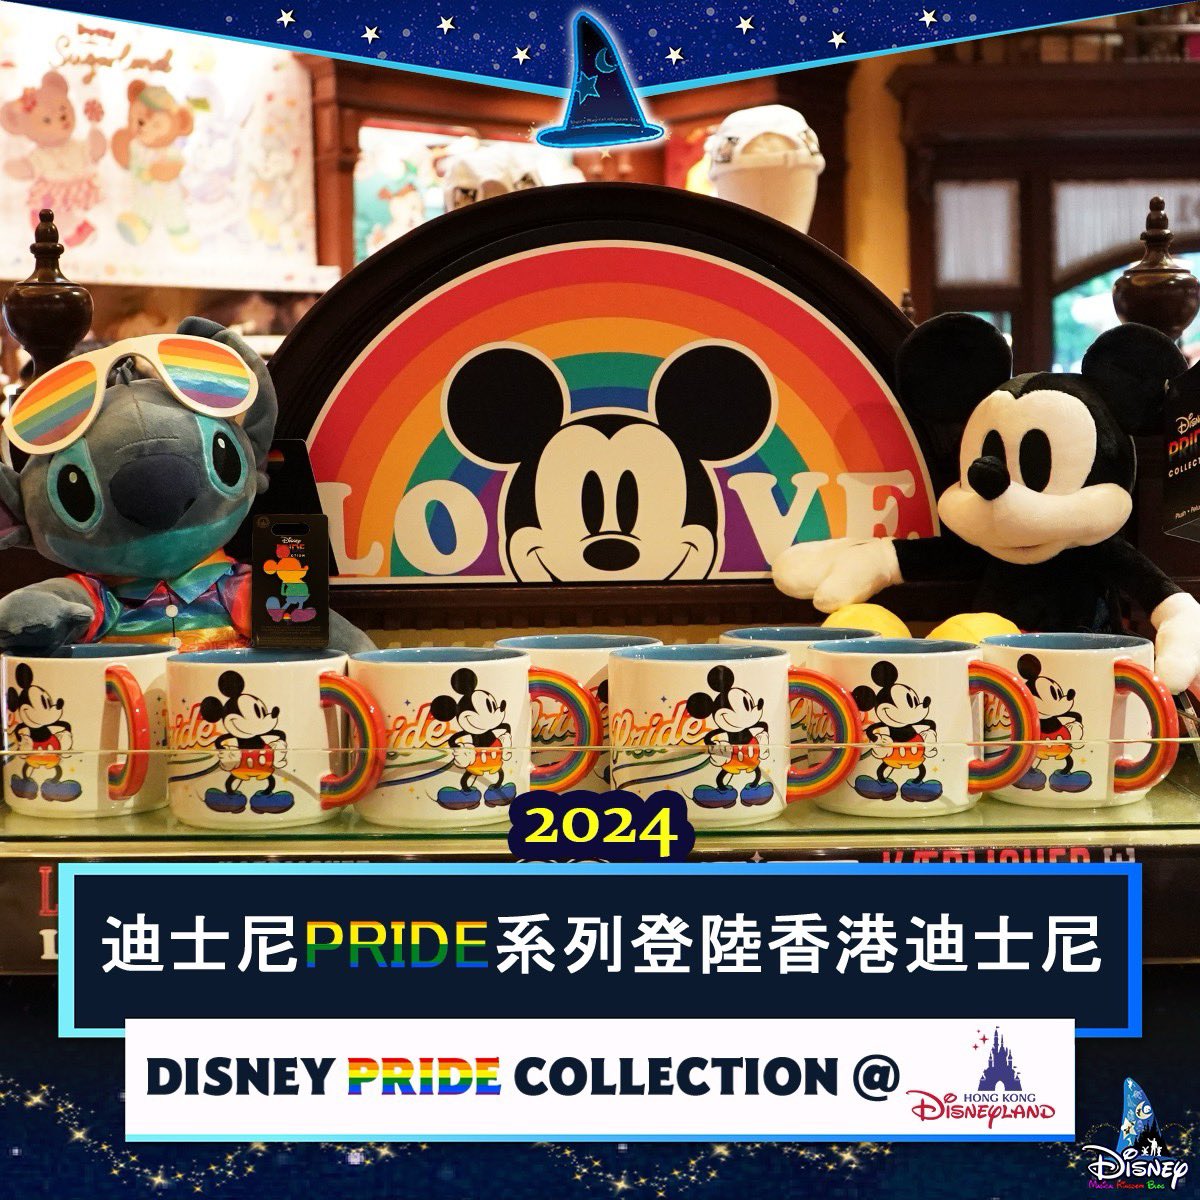 2024年迪士尼 Pride 系列商品登陸 香港迪士尼樂園度假區 Now Available At Hong Kong Disneyland Resort: 2024 Disney Pride Collection 🌈 知多啲（Magic in details）： disney-magical-kingdom-blog.com/2024/05/Disney… #DisneyPride #Pride #LGBTAIA #Disney #迪士尼 #DisneyParks #HKDL #HongKongDisneyland